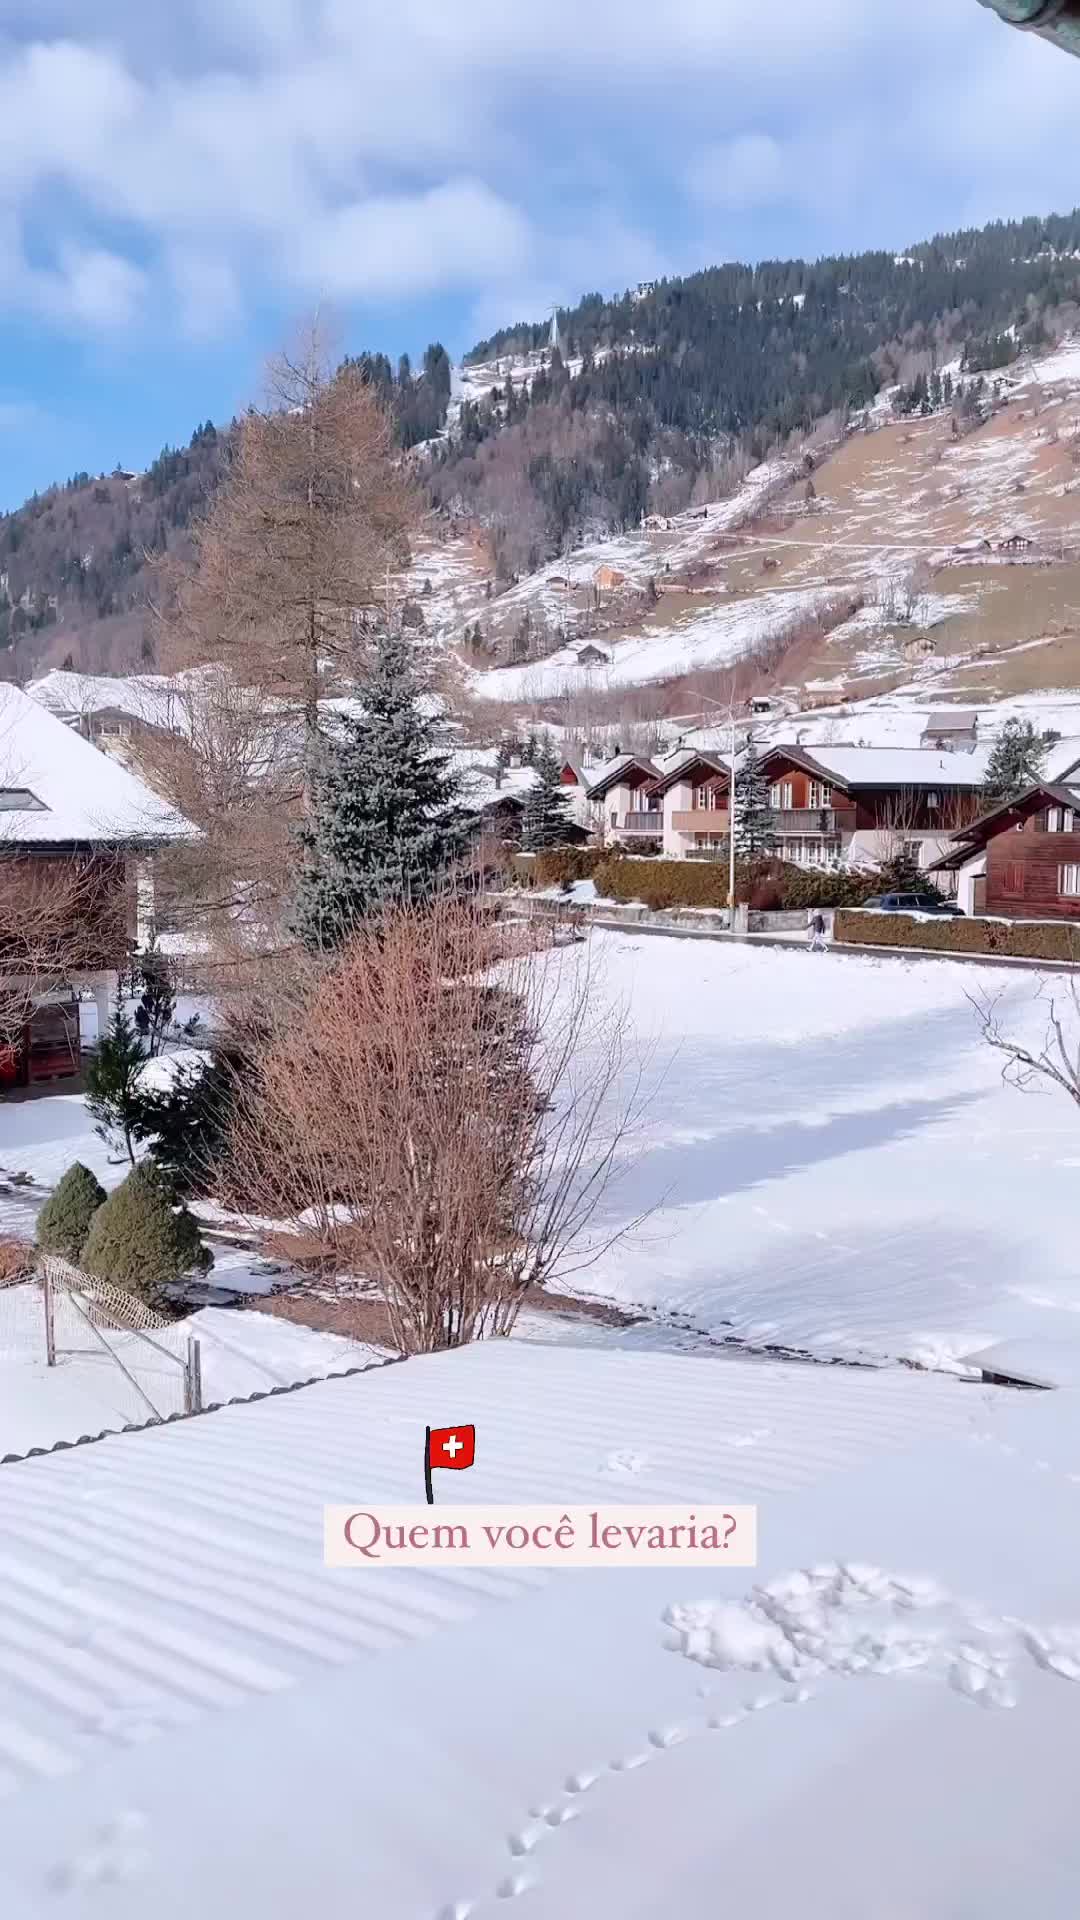 Discover Engelberg: A Winter Wonderland in Switzerland